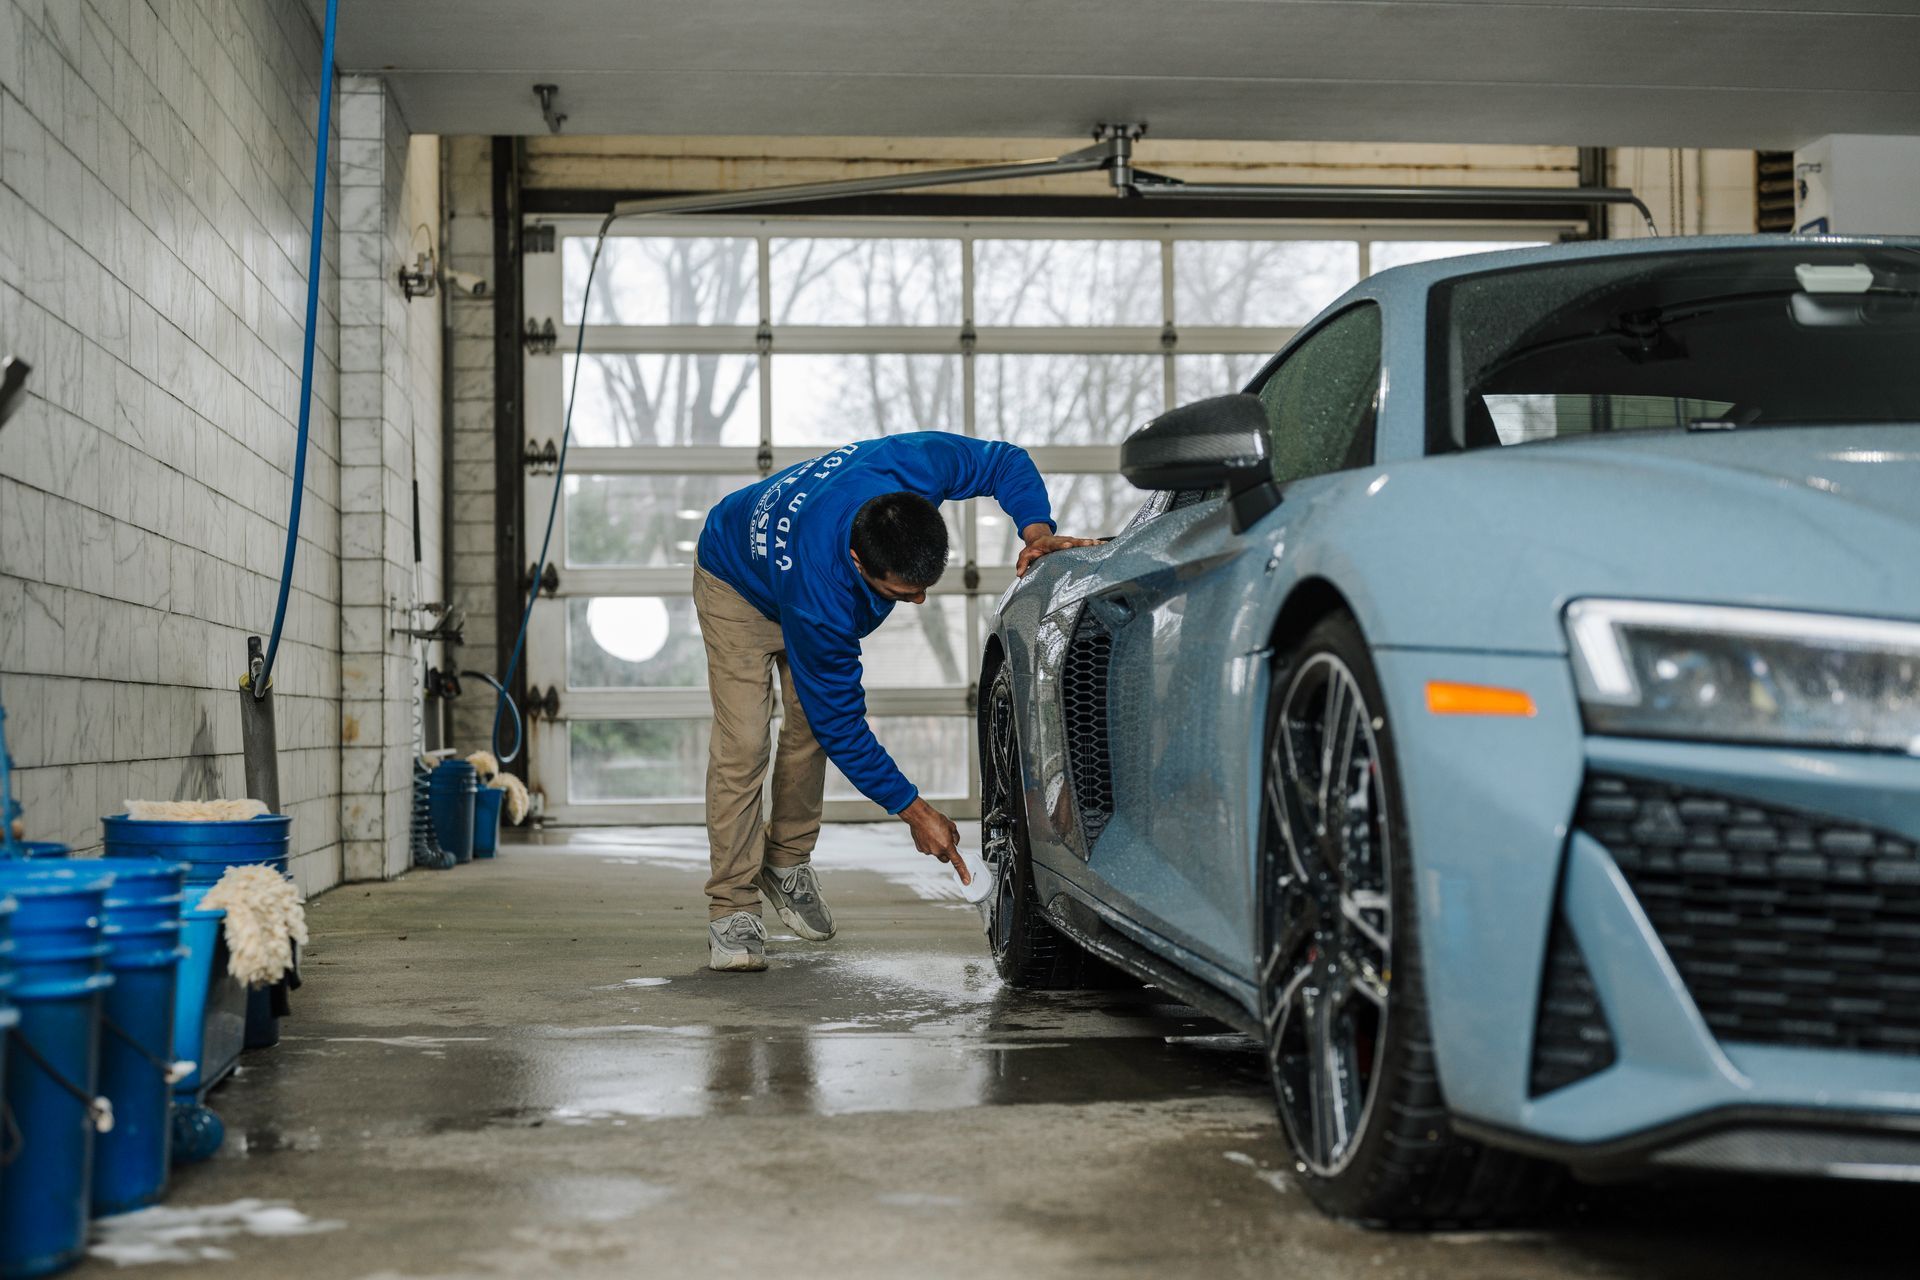 A man is washing a car in a garage.